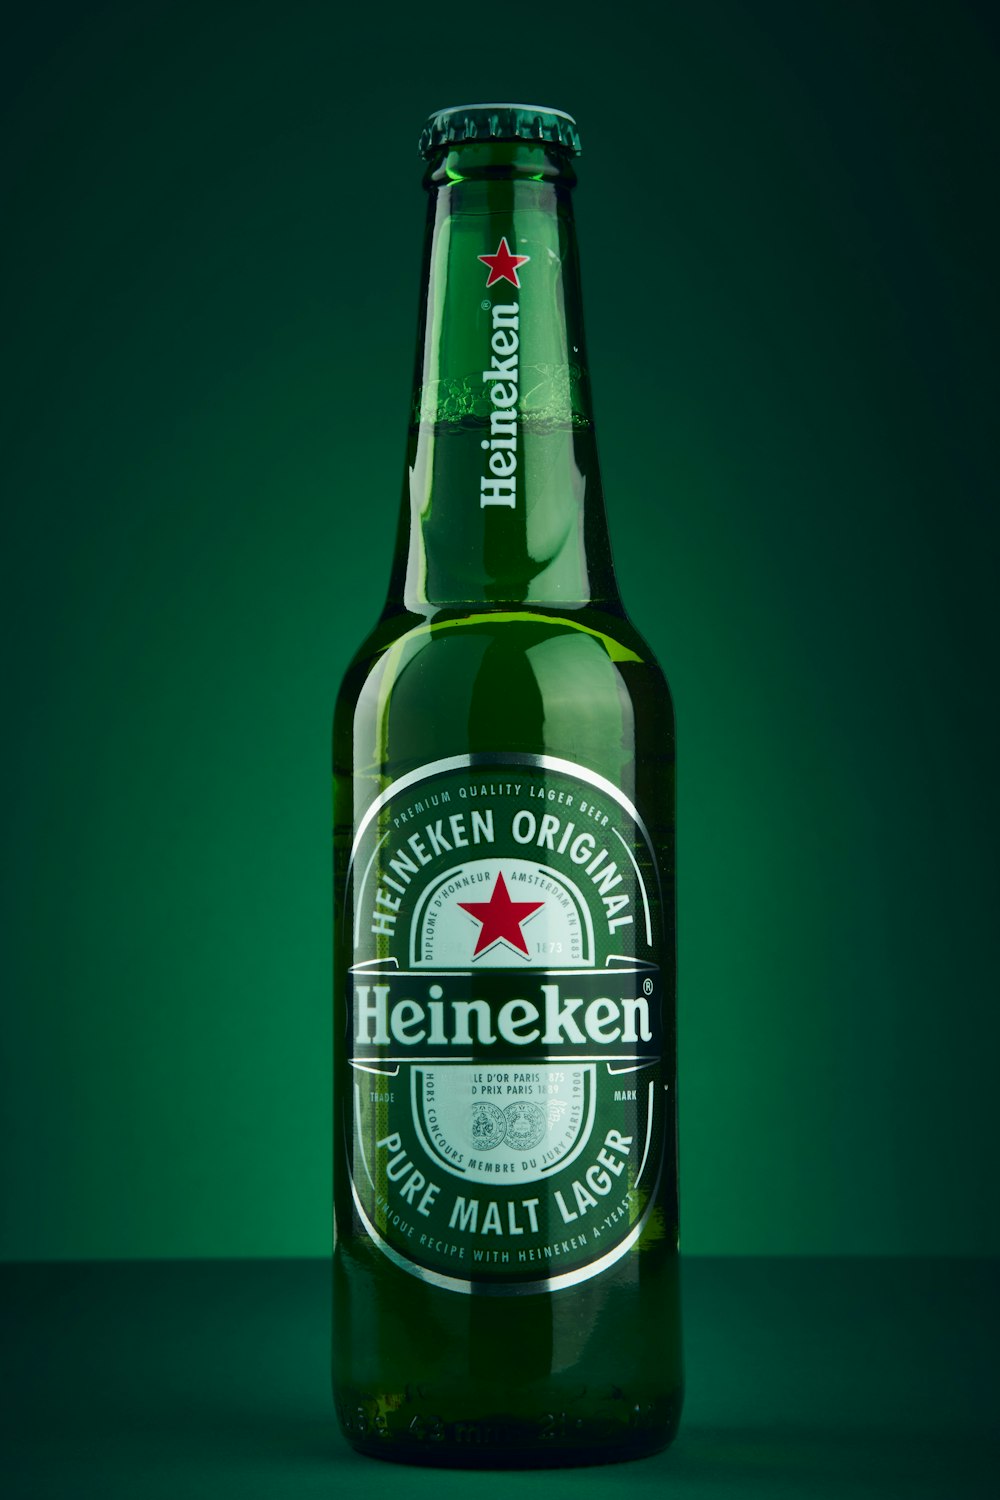 bouteille de bière heineken sur une surface verte